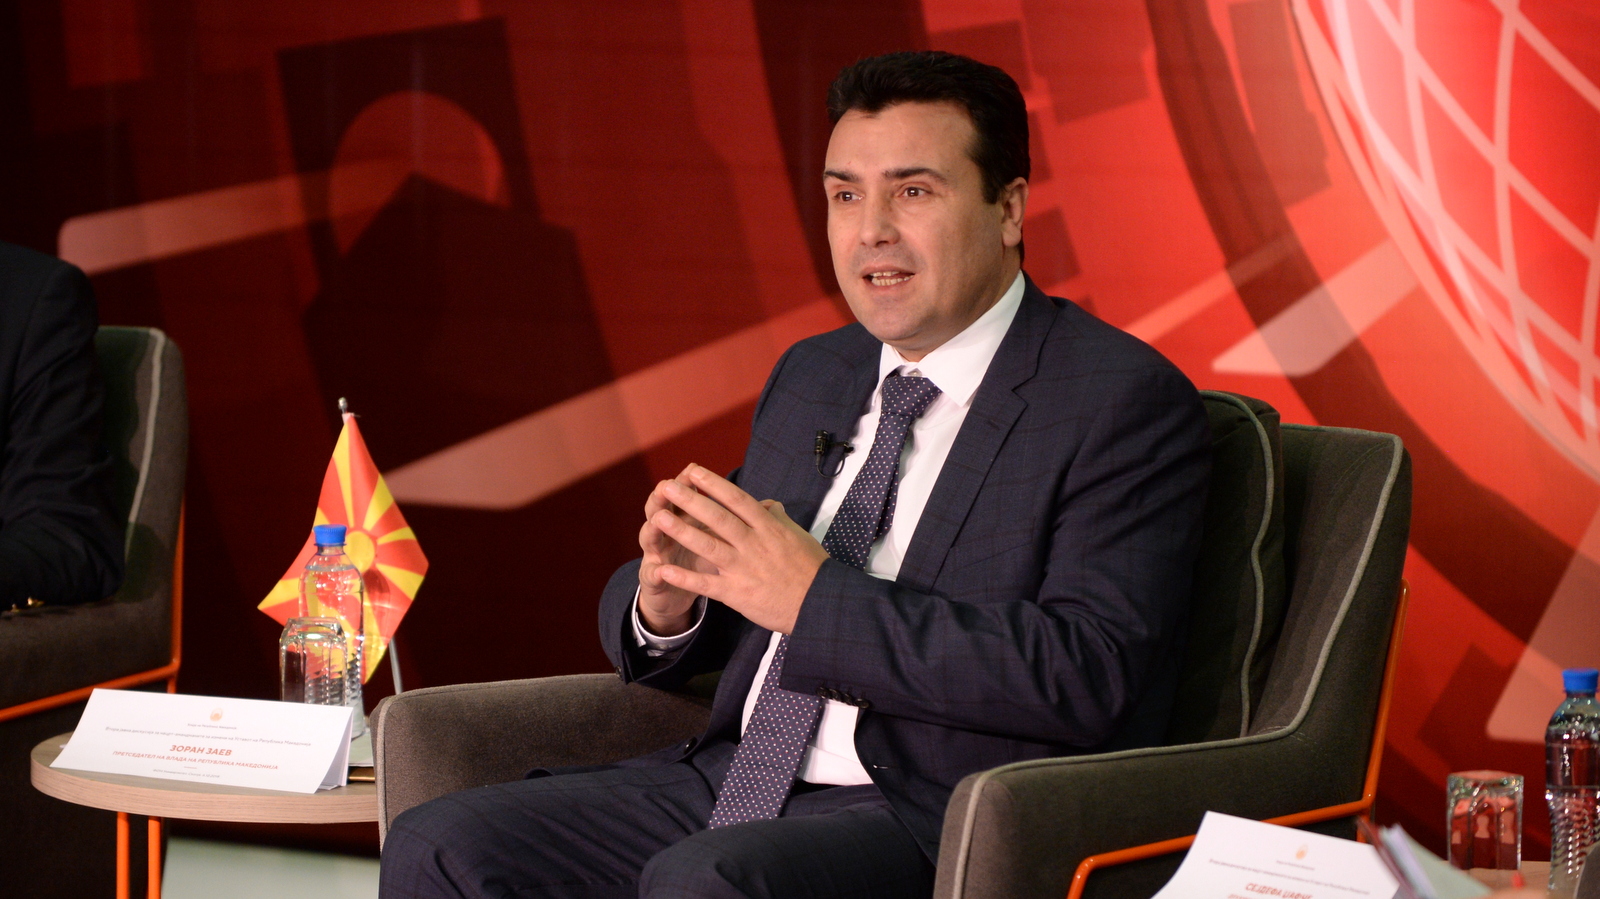 Οι Σκοπιανοί ακυρώνουν μονομερώς την Συμφωνία των Πρεσπών: Χρησιμοποιούν το όνομα «Μακεδονία» σε κάθε εσωτερική χρήση